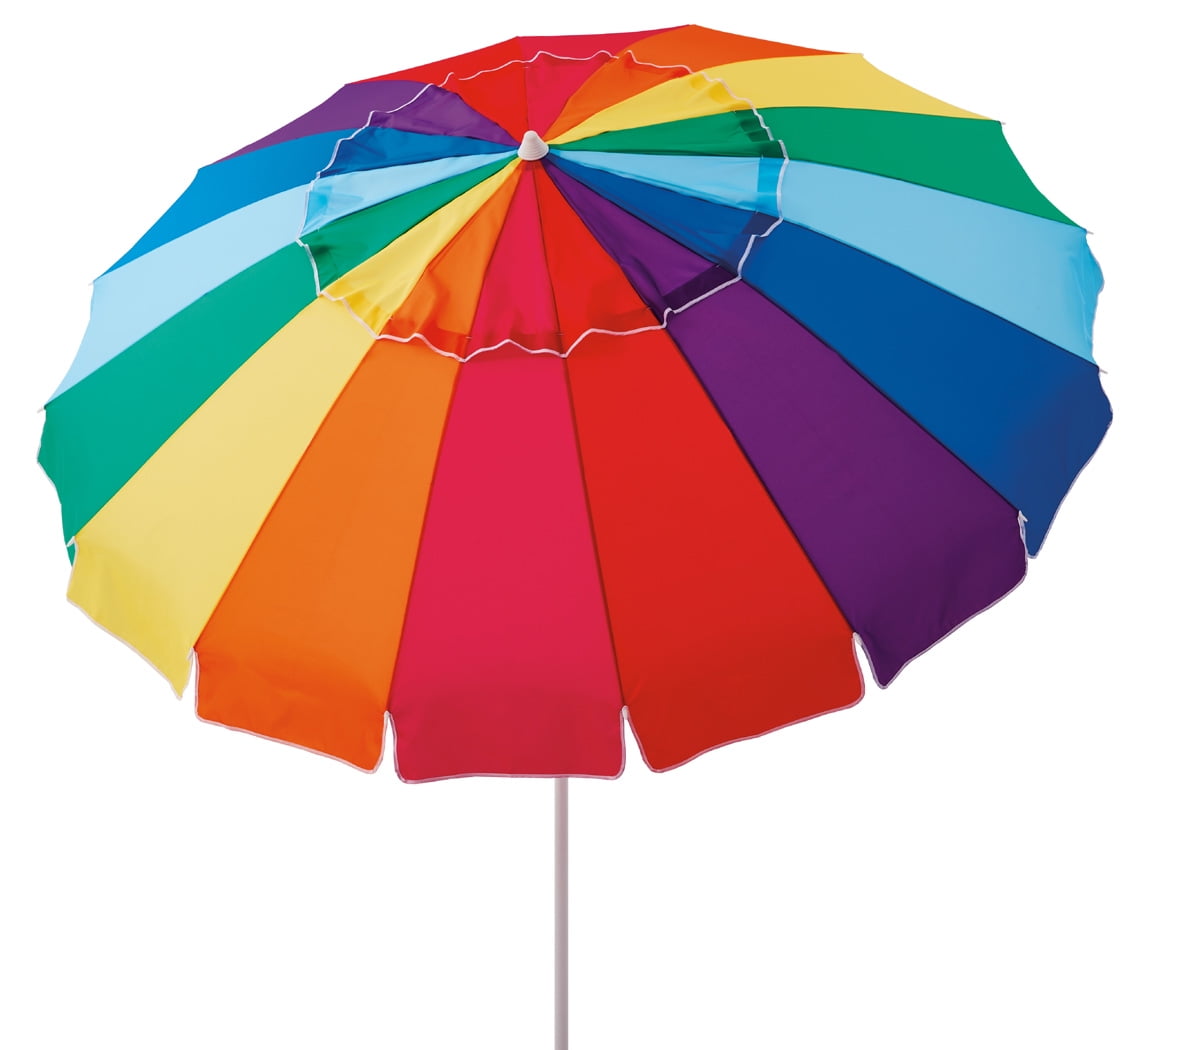 Sport-Brella Versa-Brella All Position Umbrella with Universal 